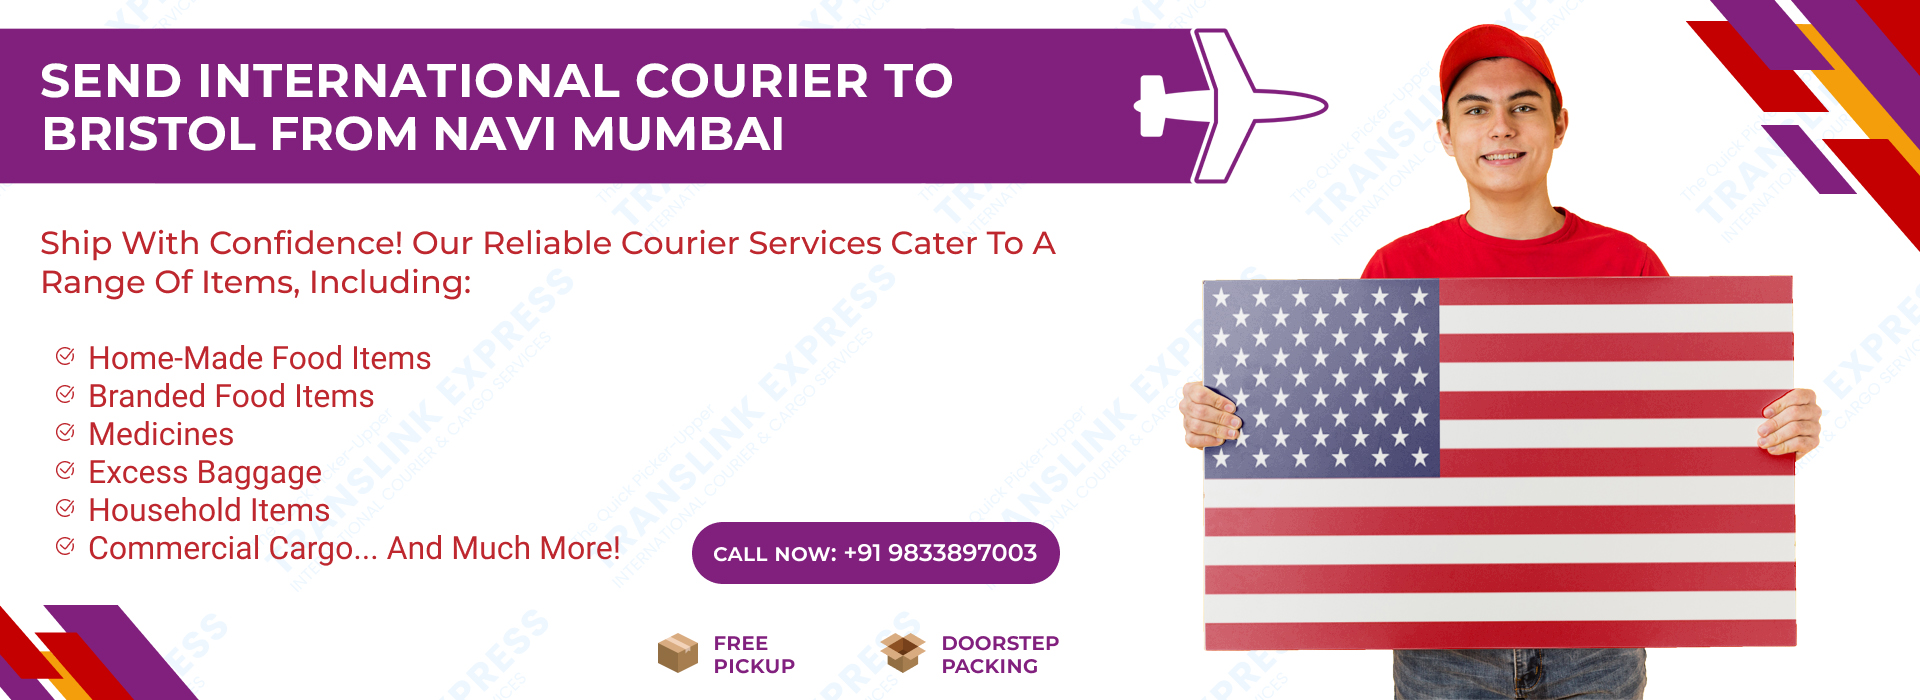 Courier to Bristol From Navi Mumbai